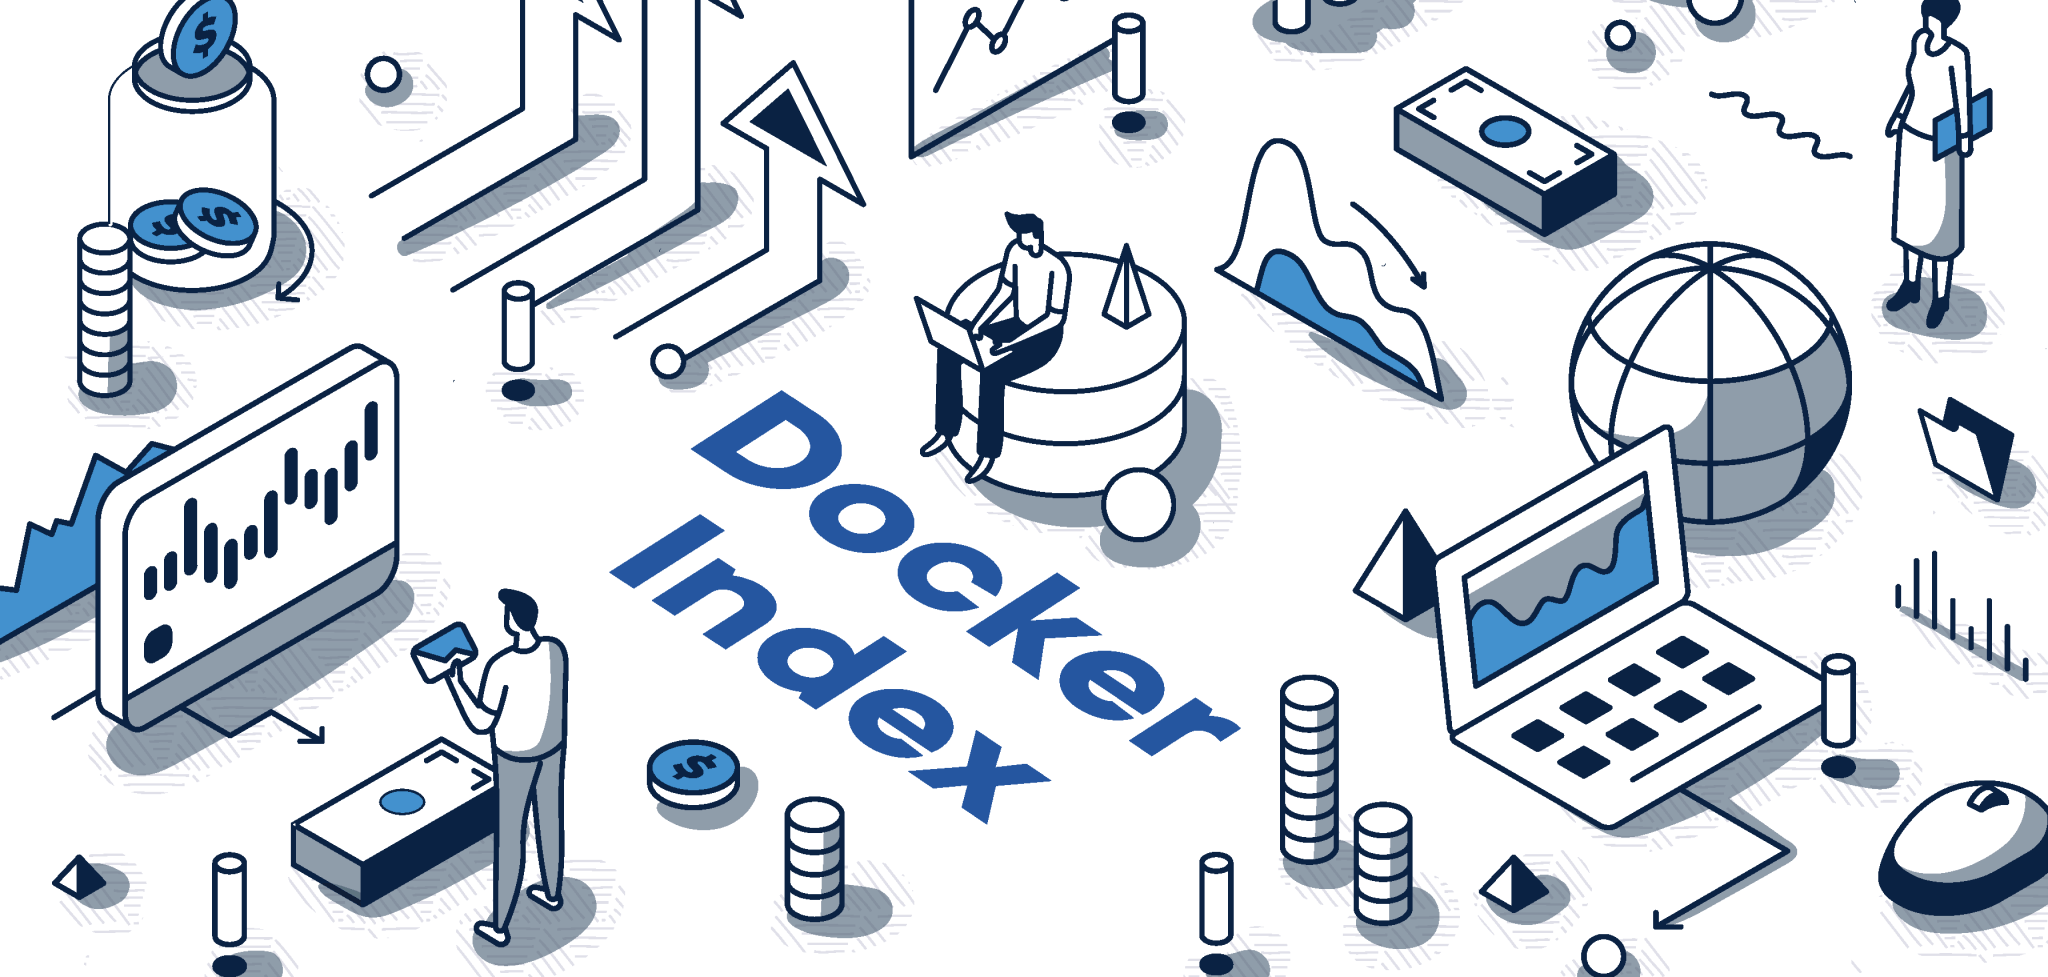 Docker Learning Handbook